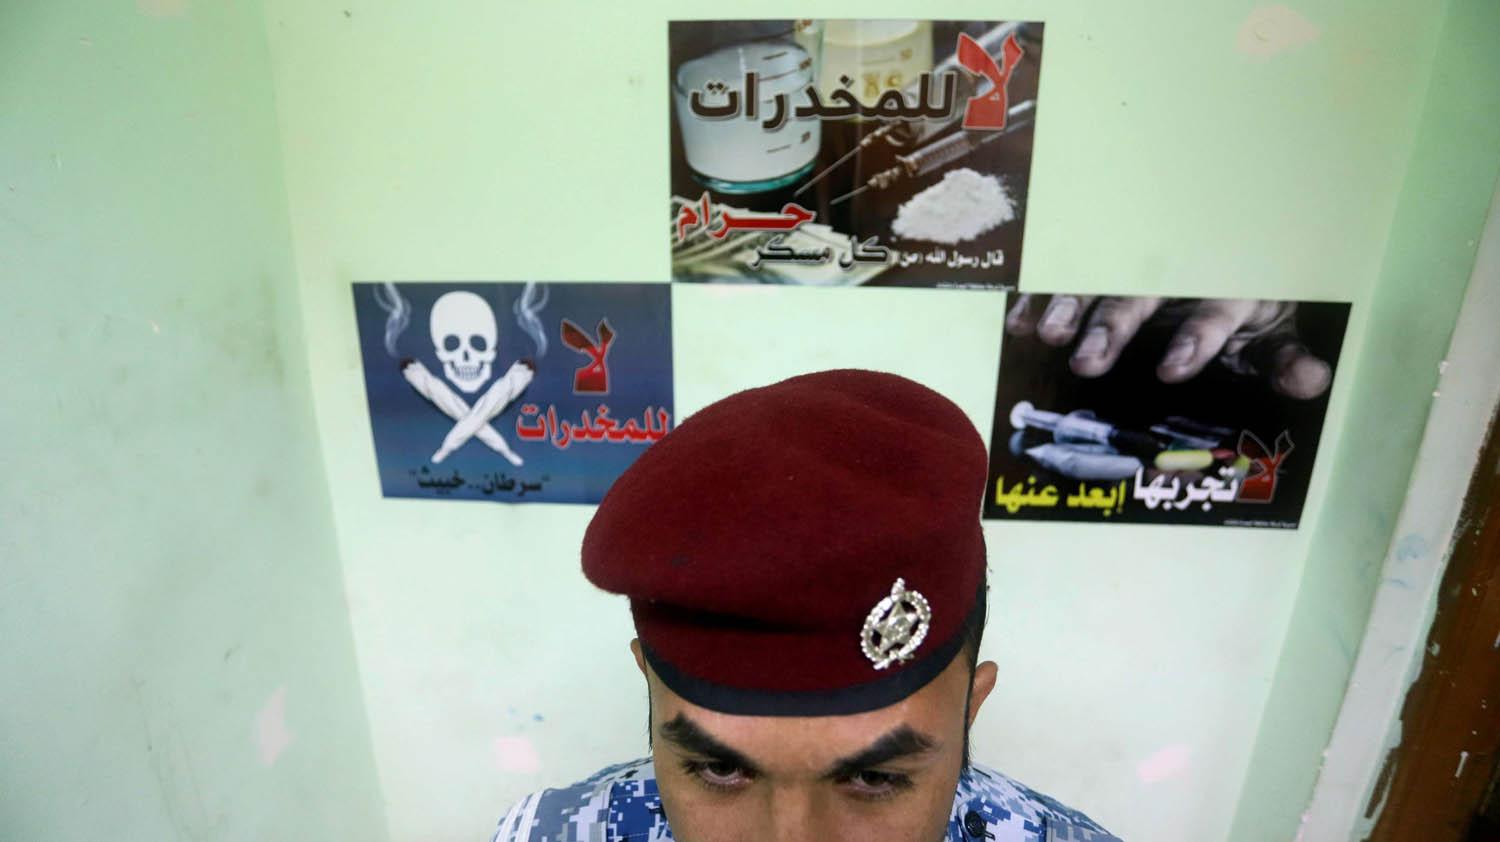 شرطي عراقي أمام ملصقات لمحاربة انتشار المخدرات في البصرة